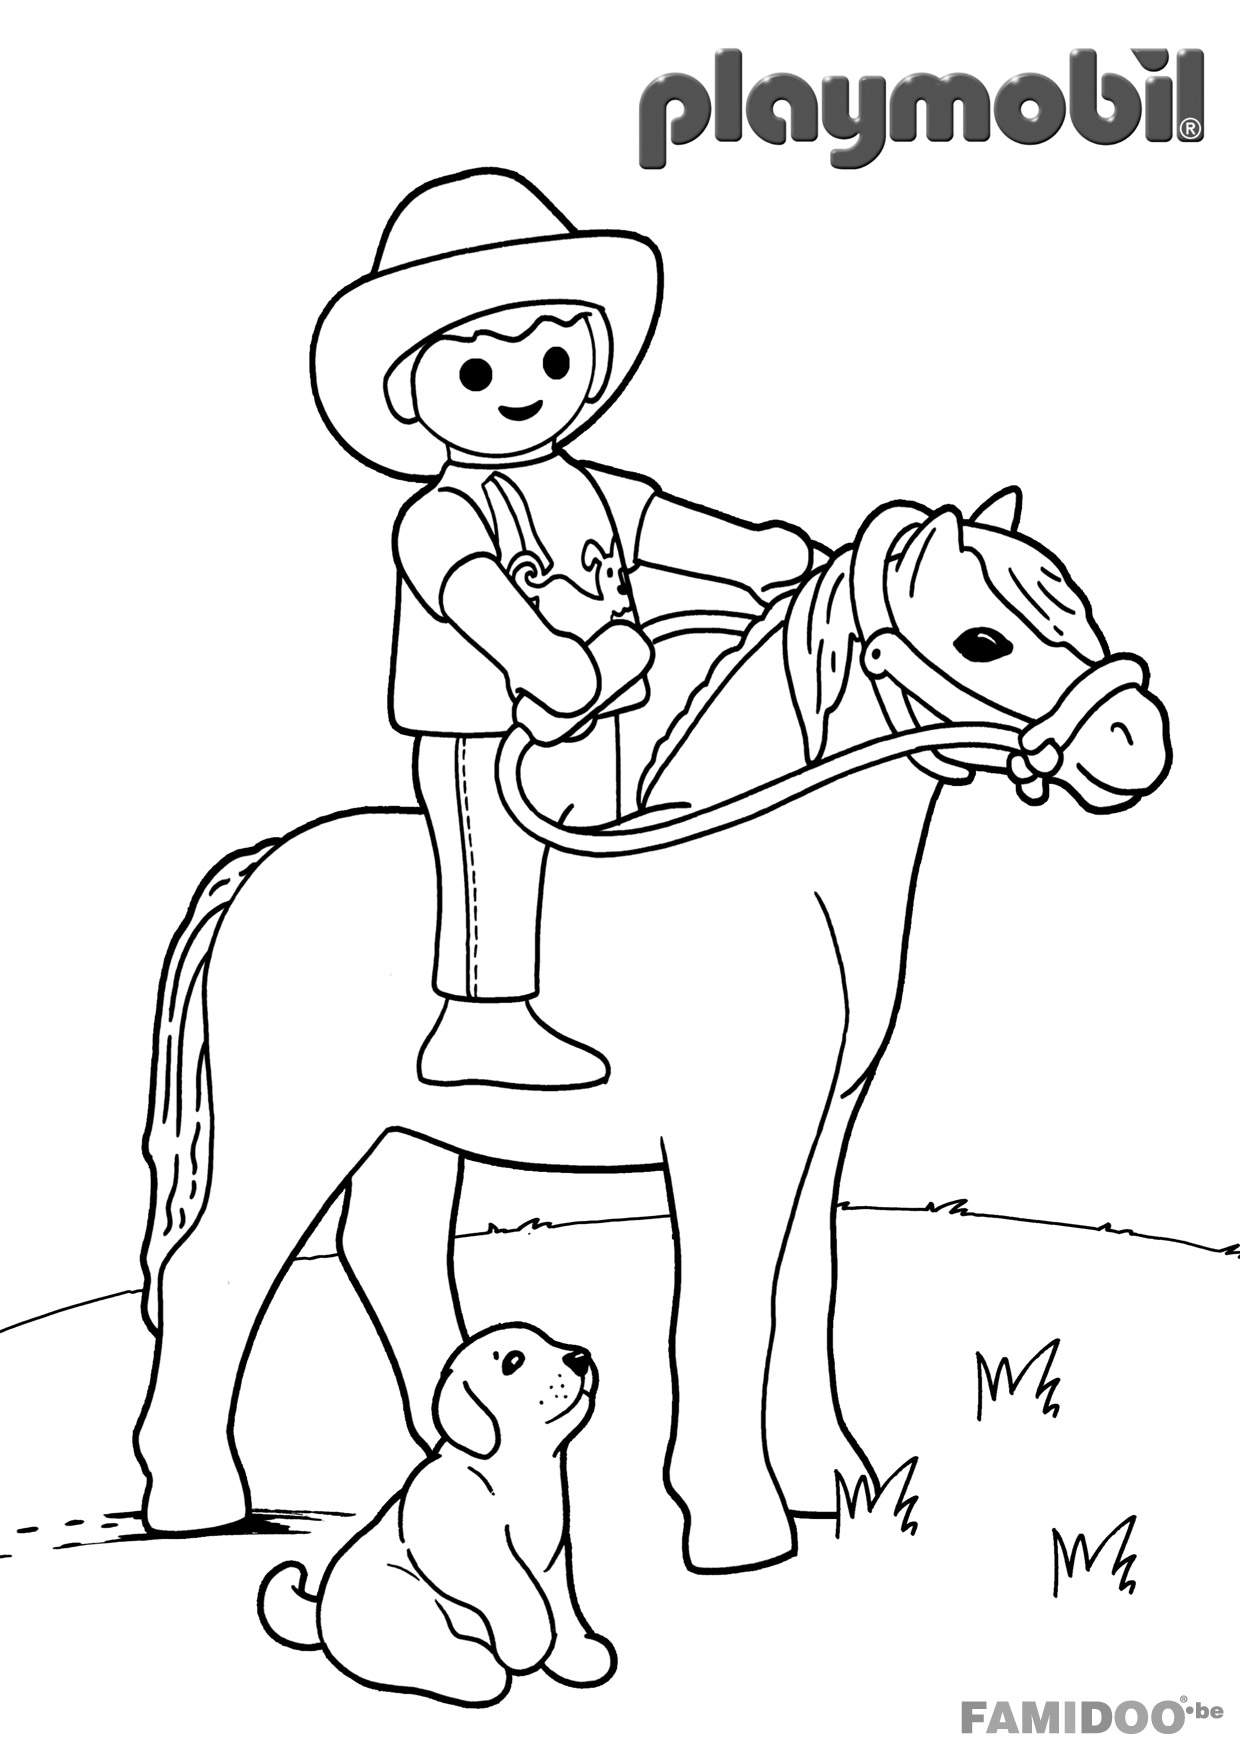 Colorear Playmobil a caballo